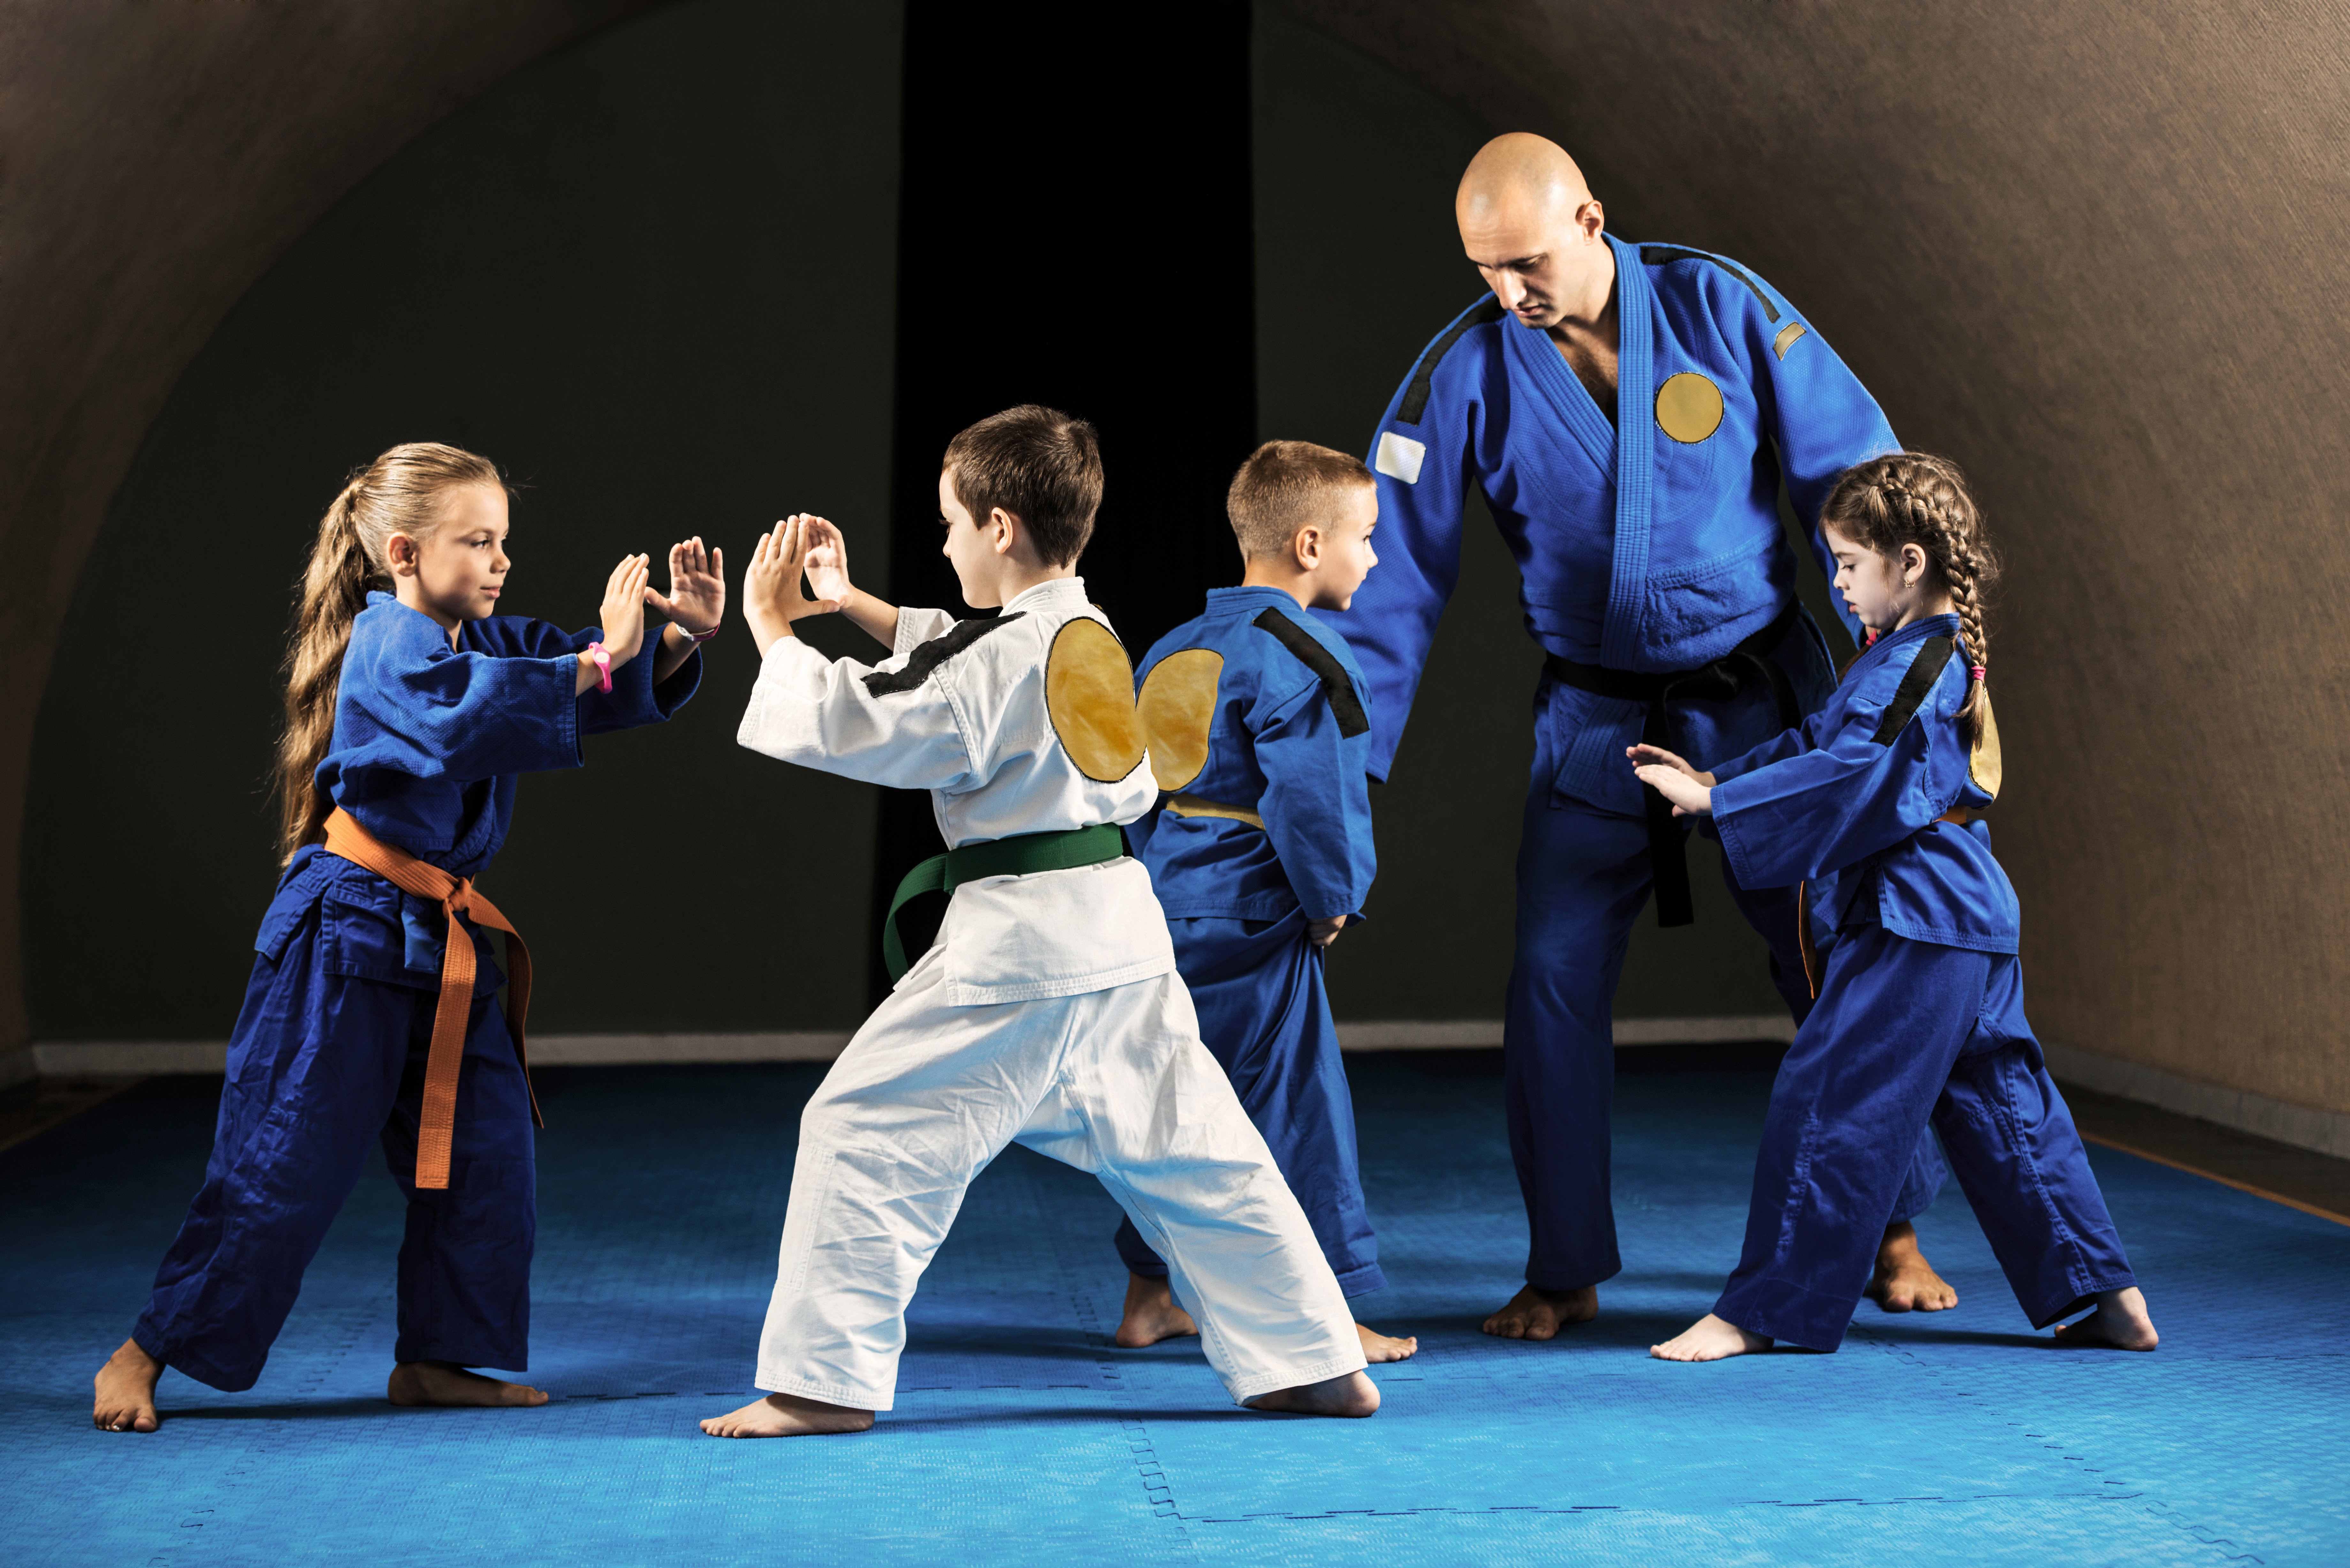 Children of different belt levels working together under a black belt instructor.